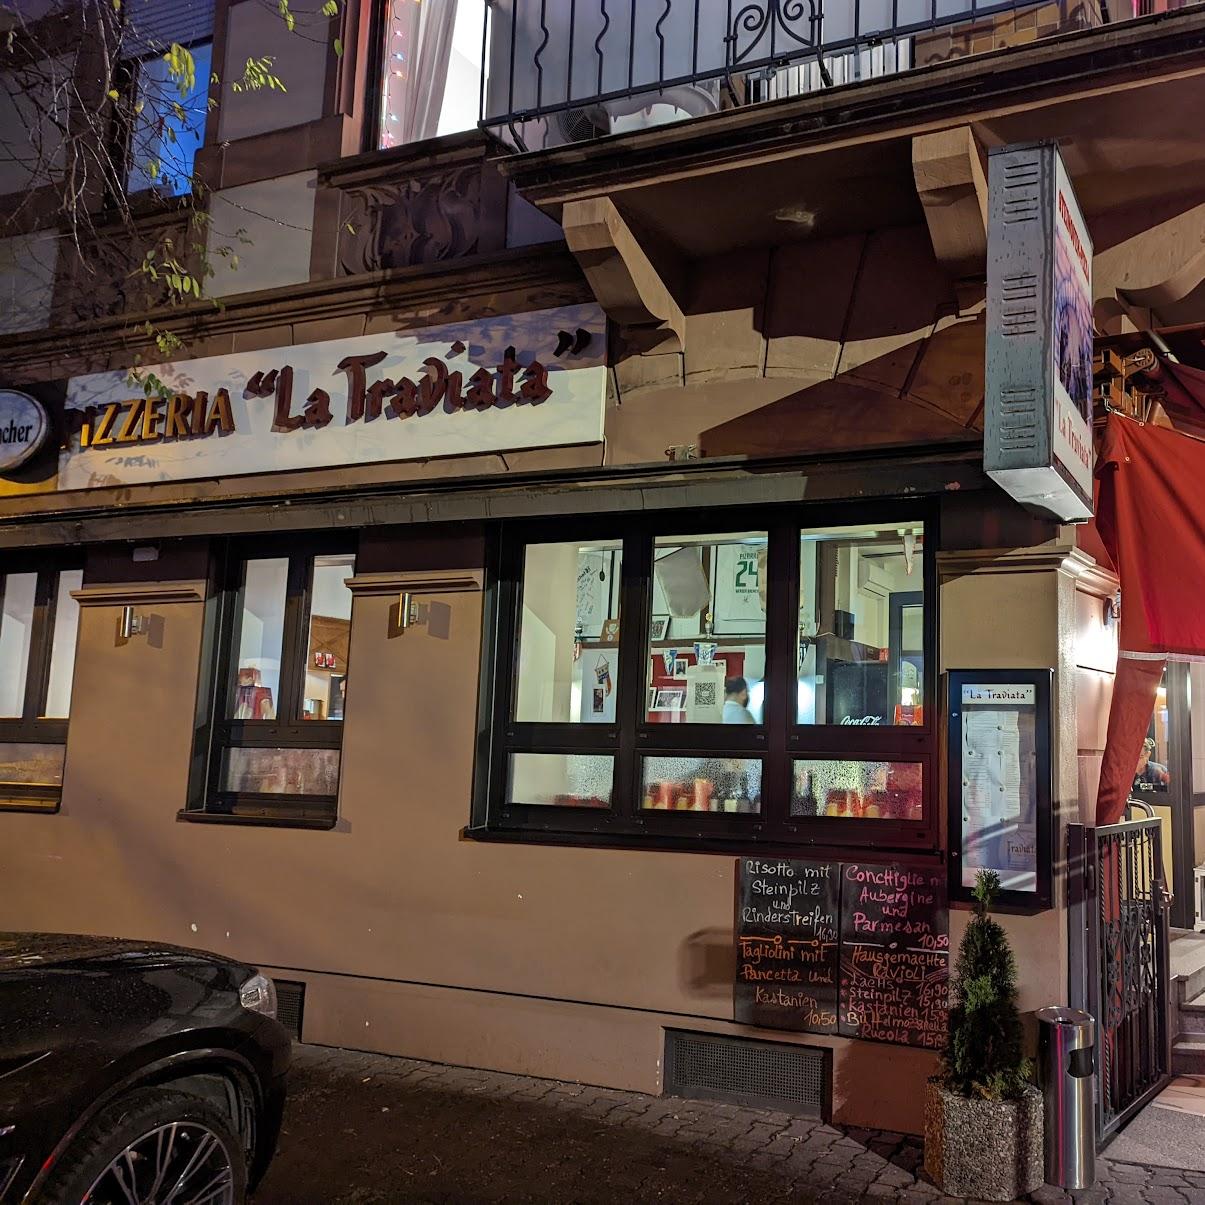 Restaurant "La Traviata" in Frankfurt am Main